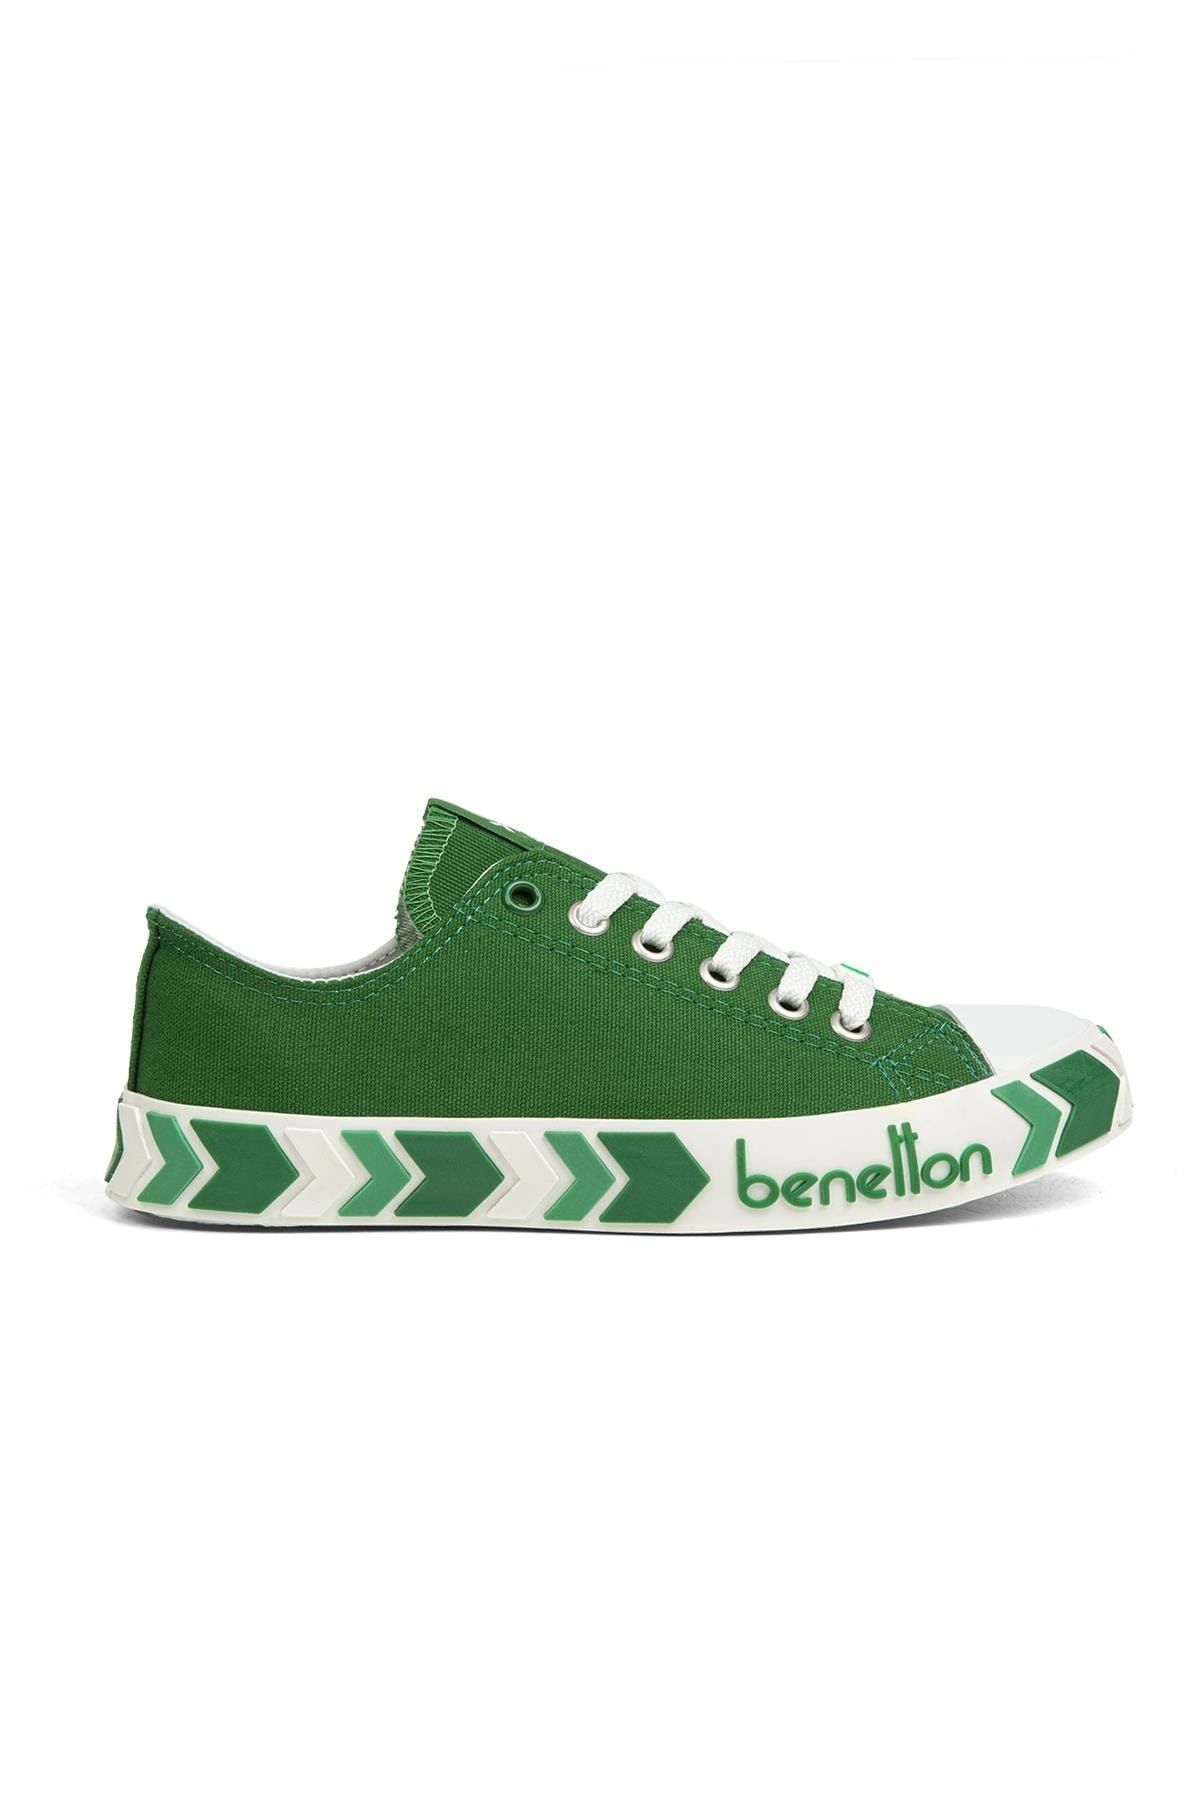 Benetton ® | Bn-30633-3374 Yesil - Çocuk Spor Ayakkabı